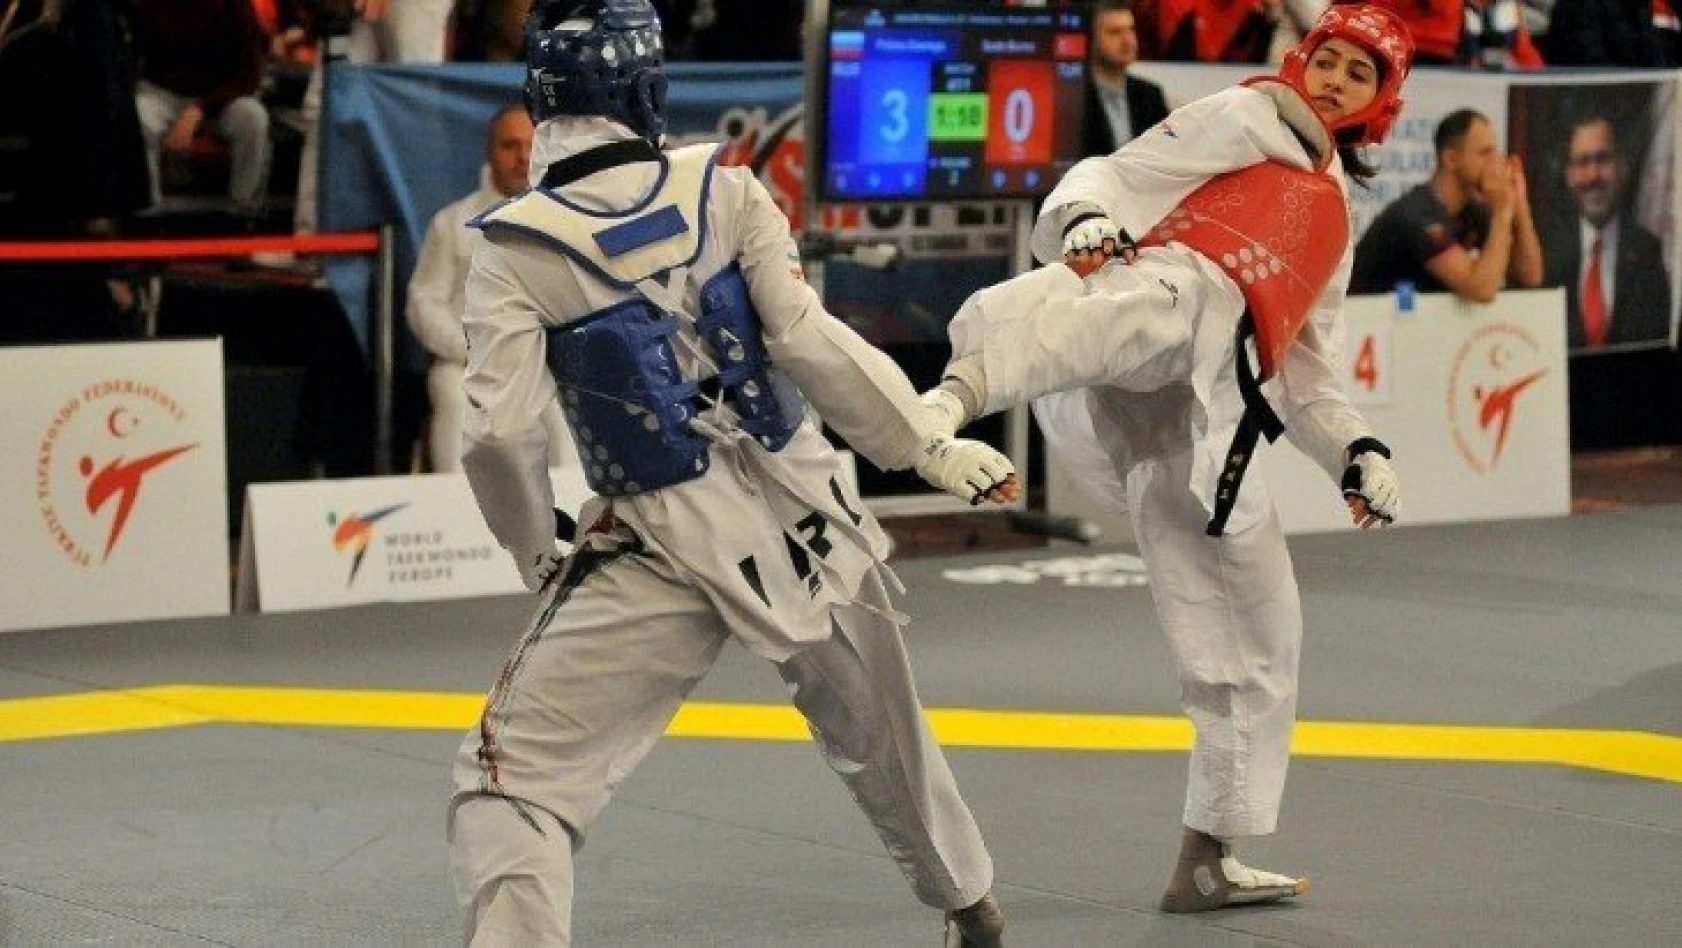 Milli taekwondocu Özdemir, hayatını kaybetti